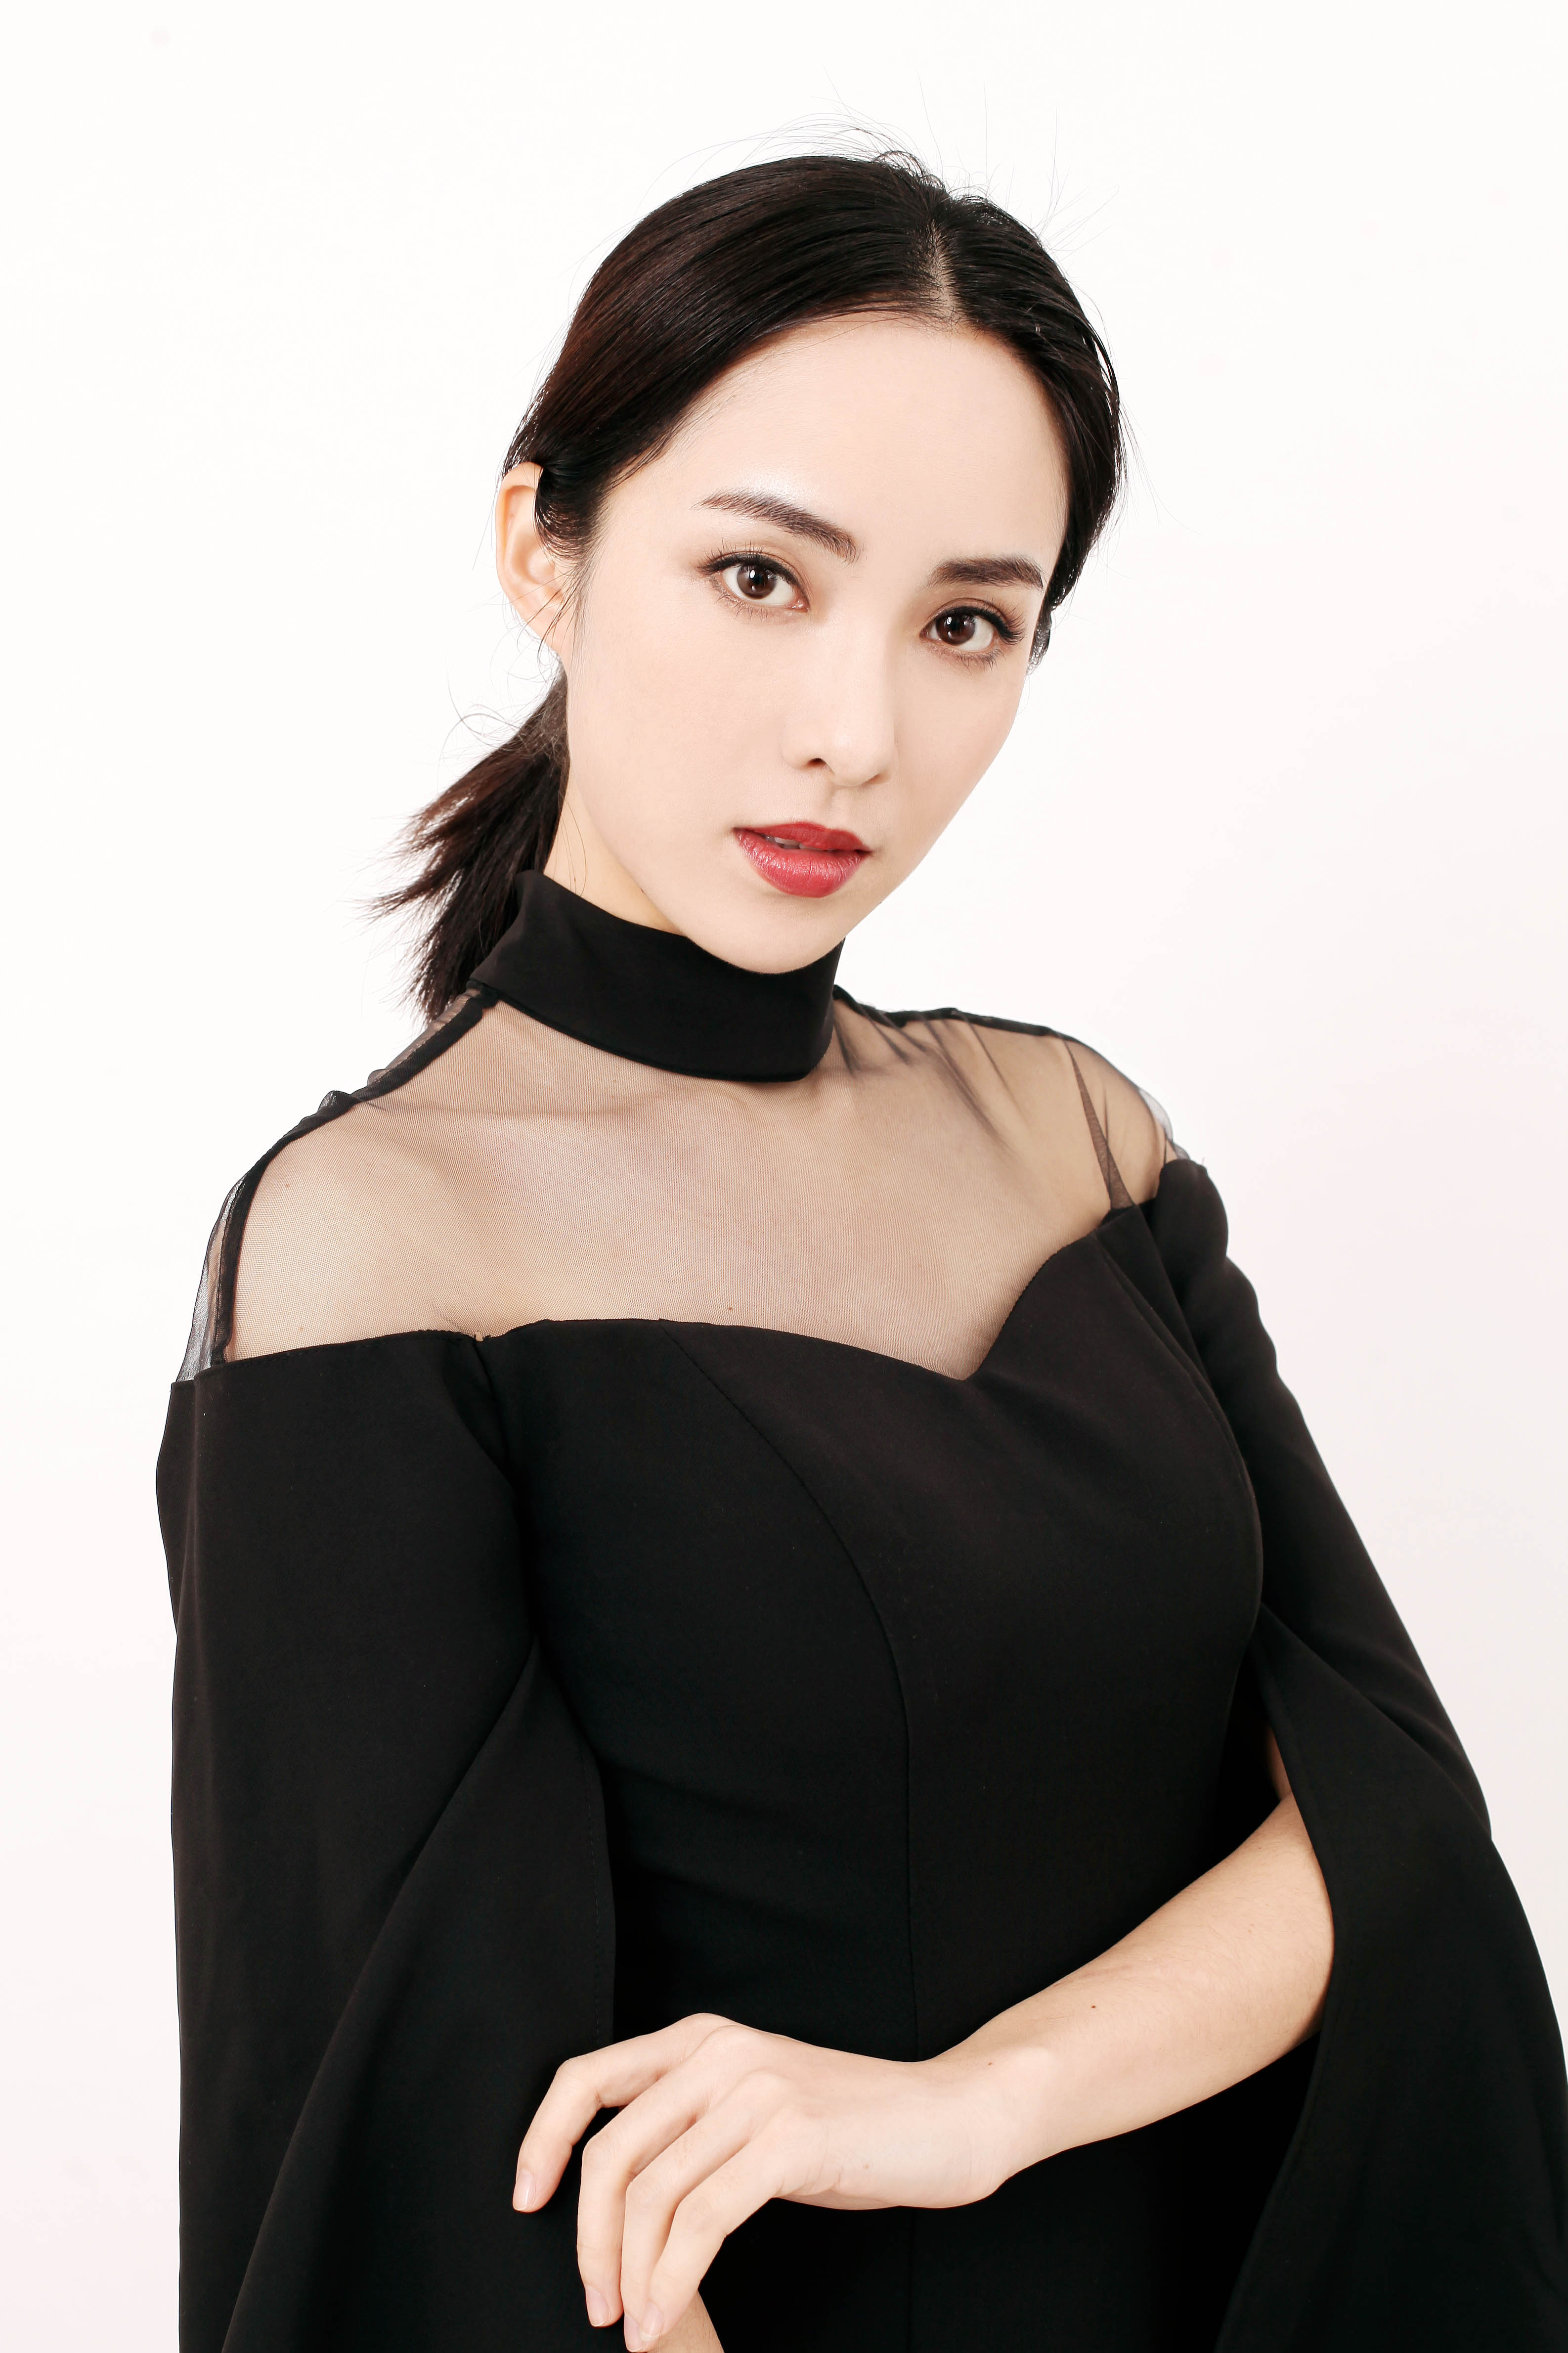 阳蕾荣获北京国际电影节网影盛典十佳网络电影女演员